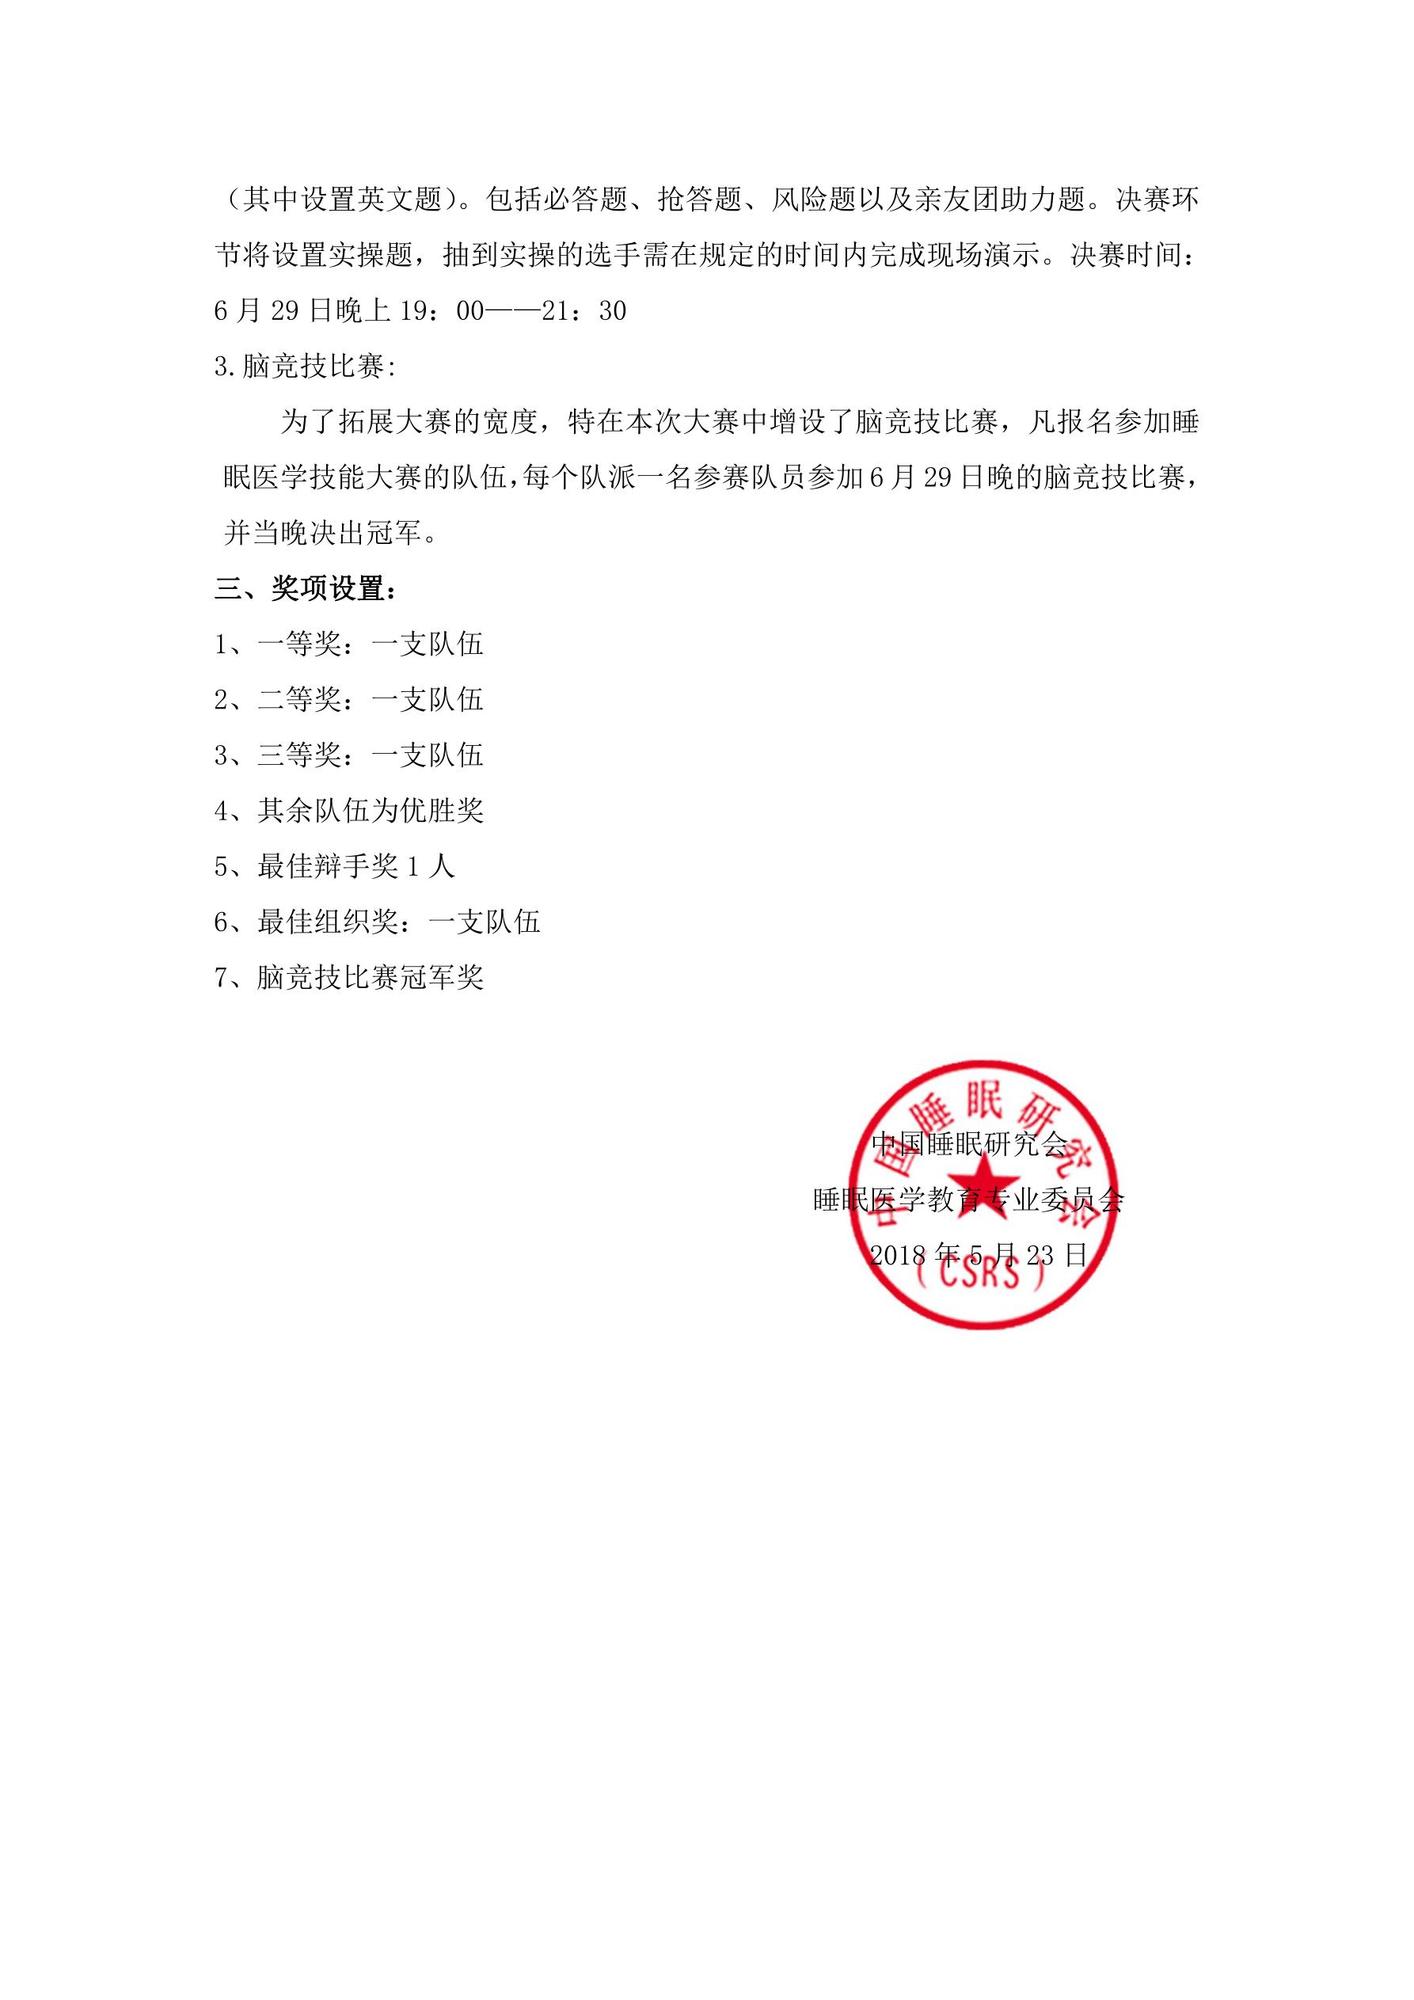 中国睡眠研究会“倍德杯”全国睡眠医学技能大赛 (1)_2.jpg